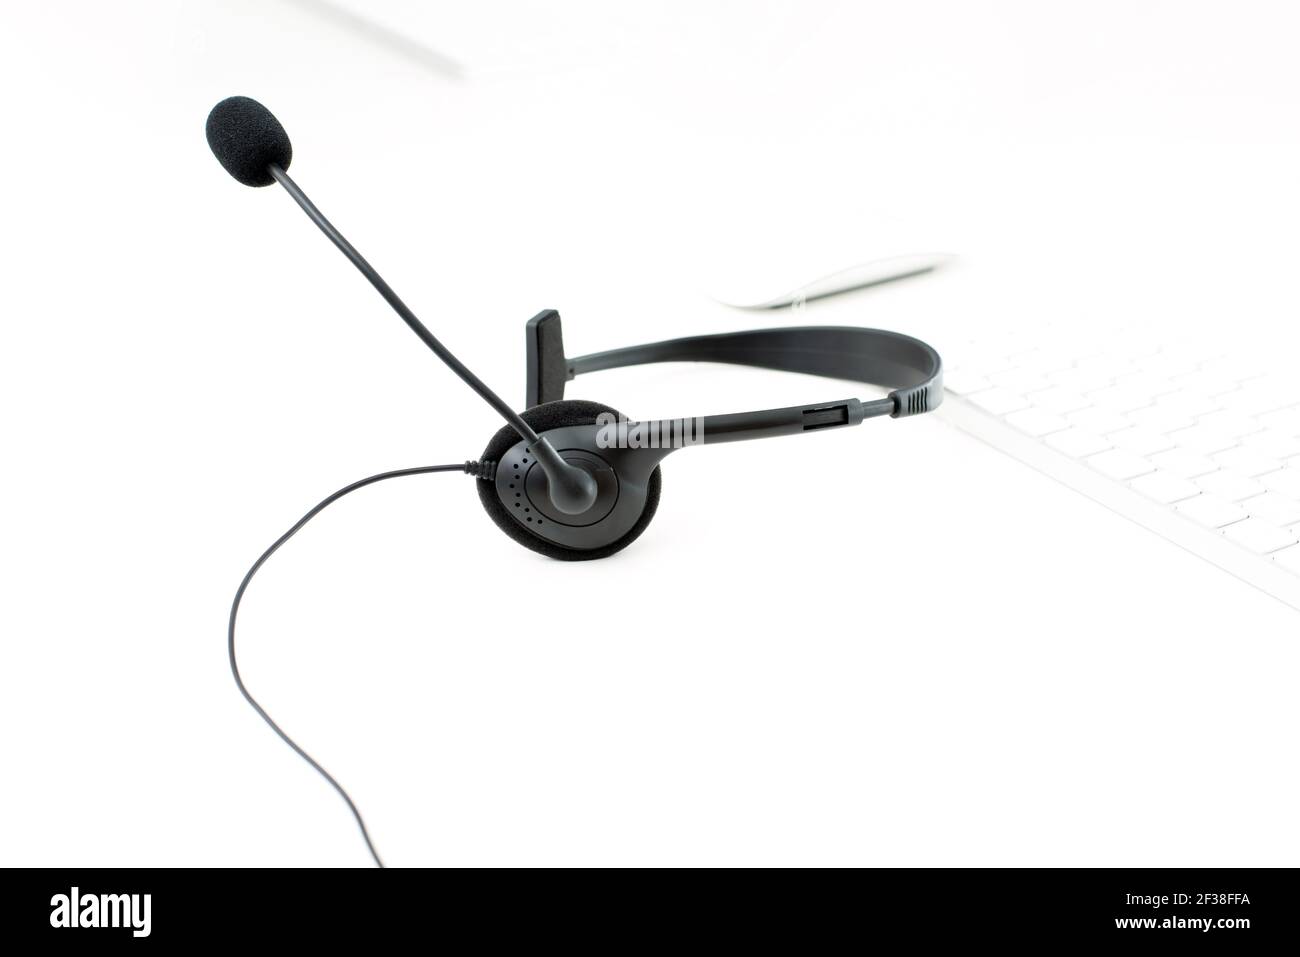 Mikrofon-Headset auf weißem Tisch mit unscharfen Computer-Tastatur Hintergrund - Bediener, Call Center, Kundendienst und Telemarketing-Konzepte Stockfoto